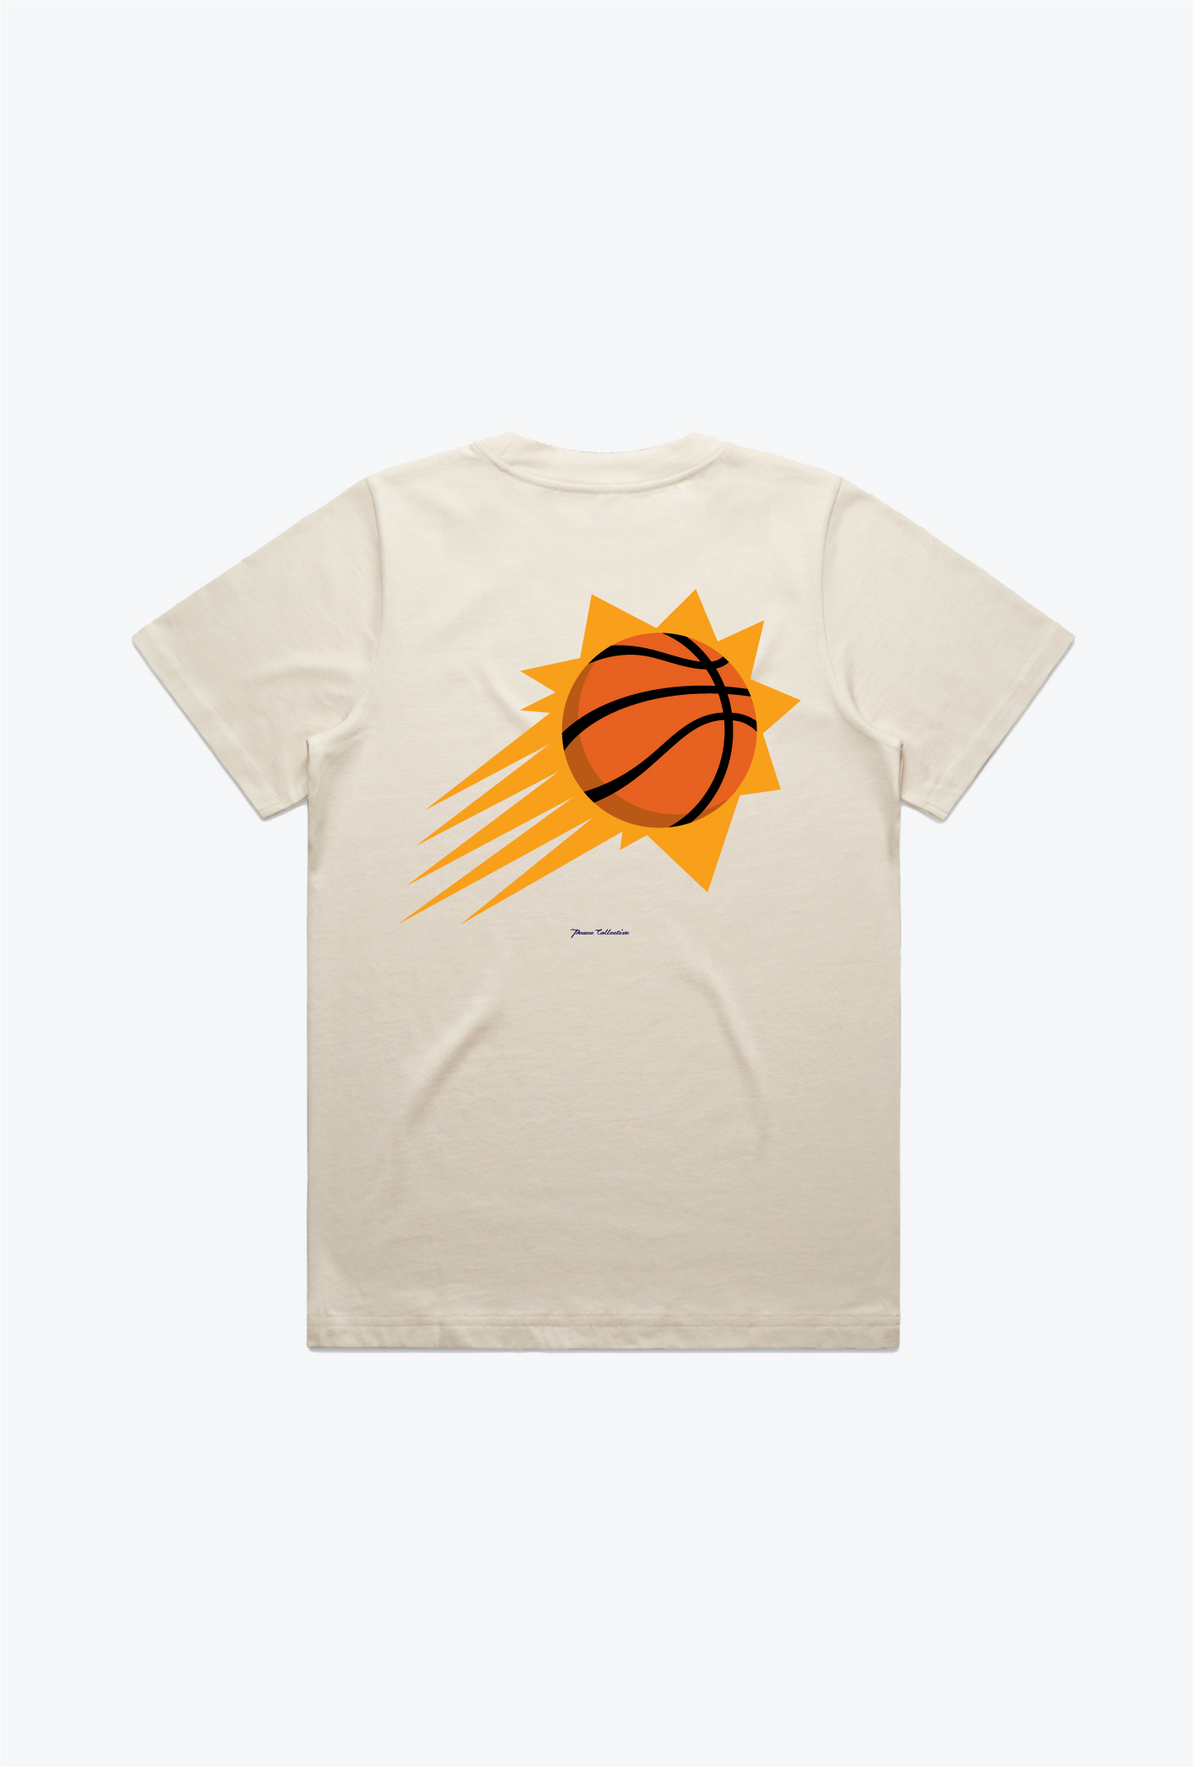 Phoenix Suns Women's Heavyweight T-Shirt - Natural